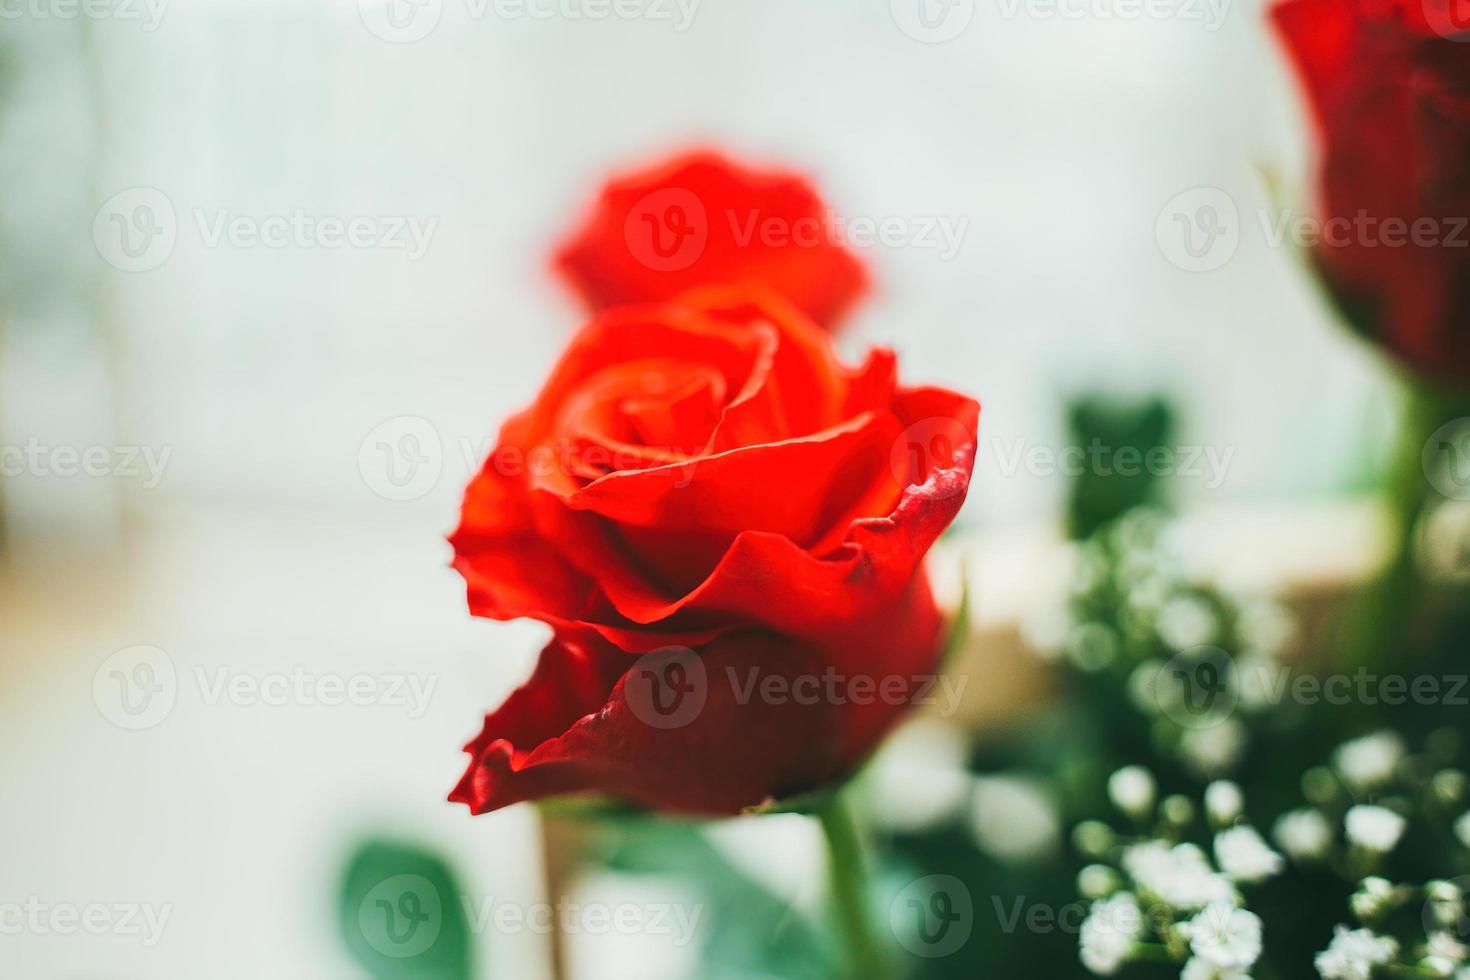 boeket verse rode rozen, bloem lichte achtergrond. close-up van een rode roos met waterdruppels. foto